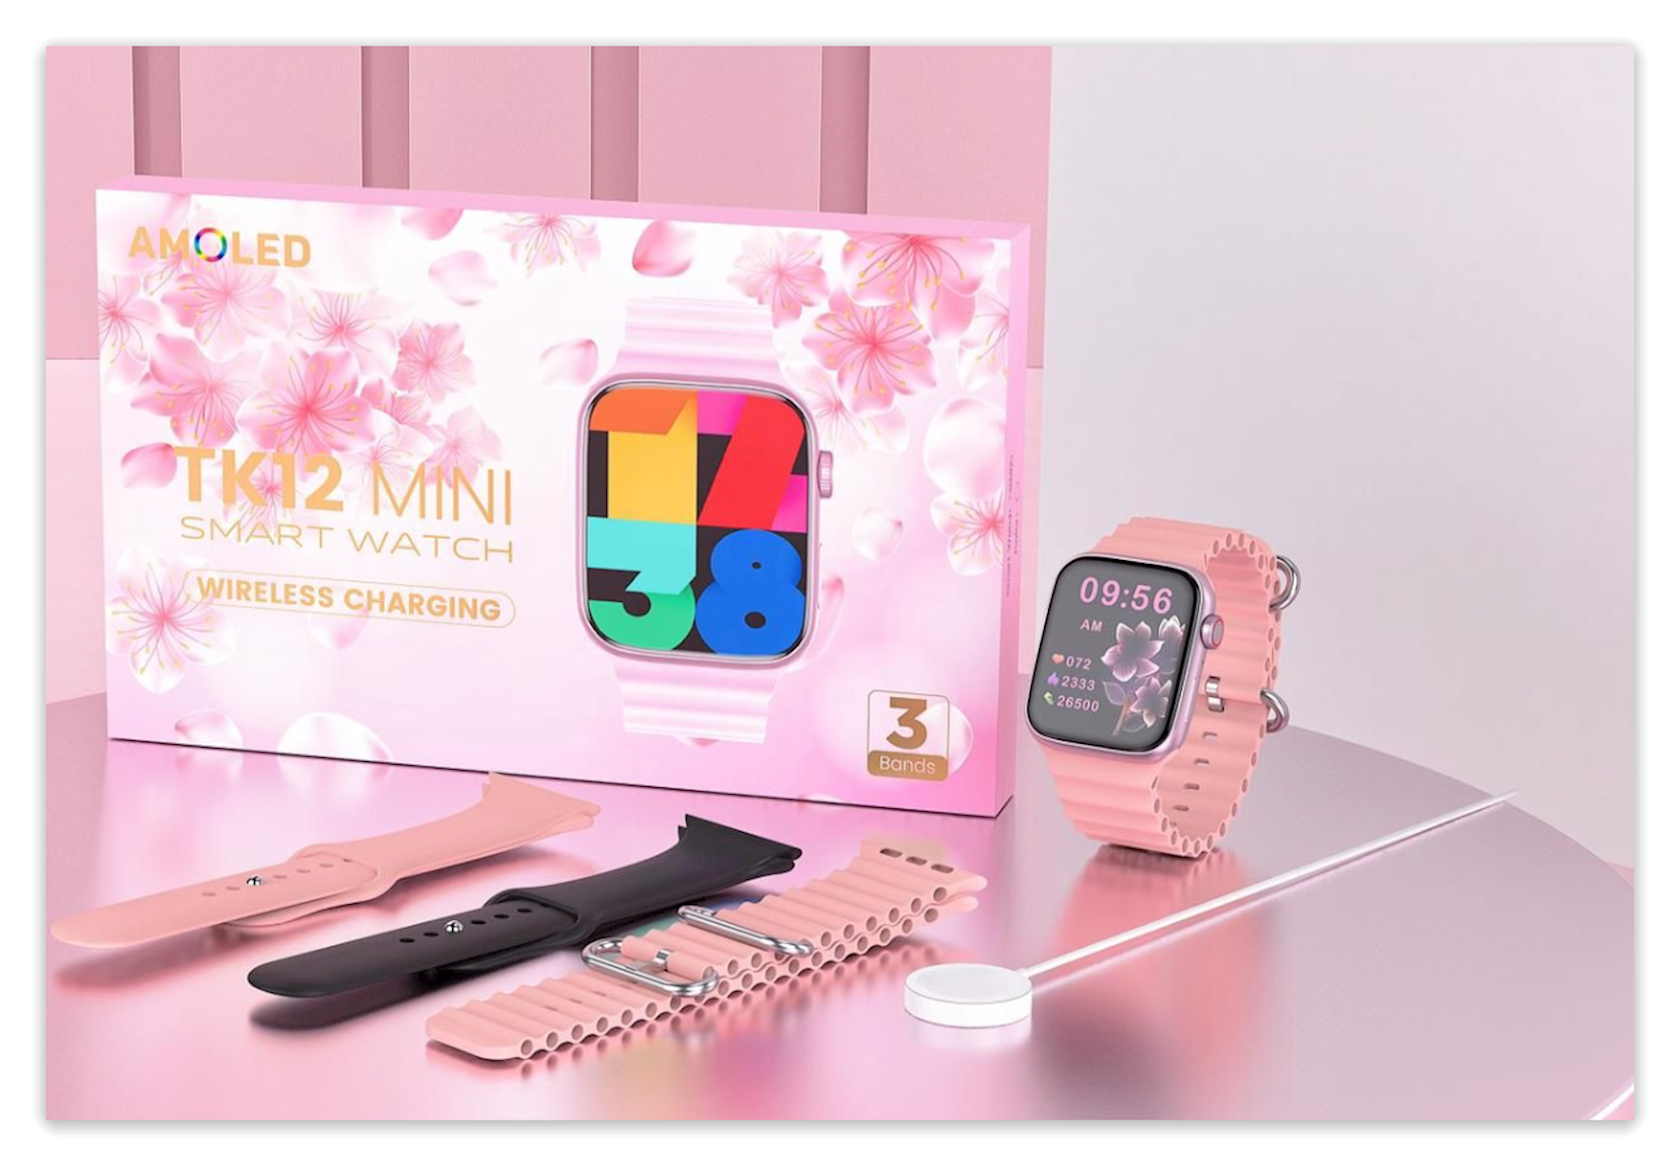 Смарт-часы Smart Watch Tk12 Mini - купить в Баку. Цена, обзор, отзывы,  продажа